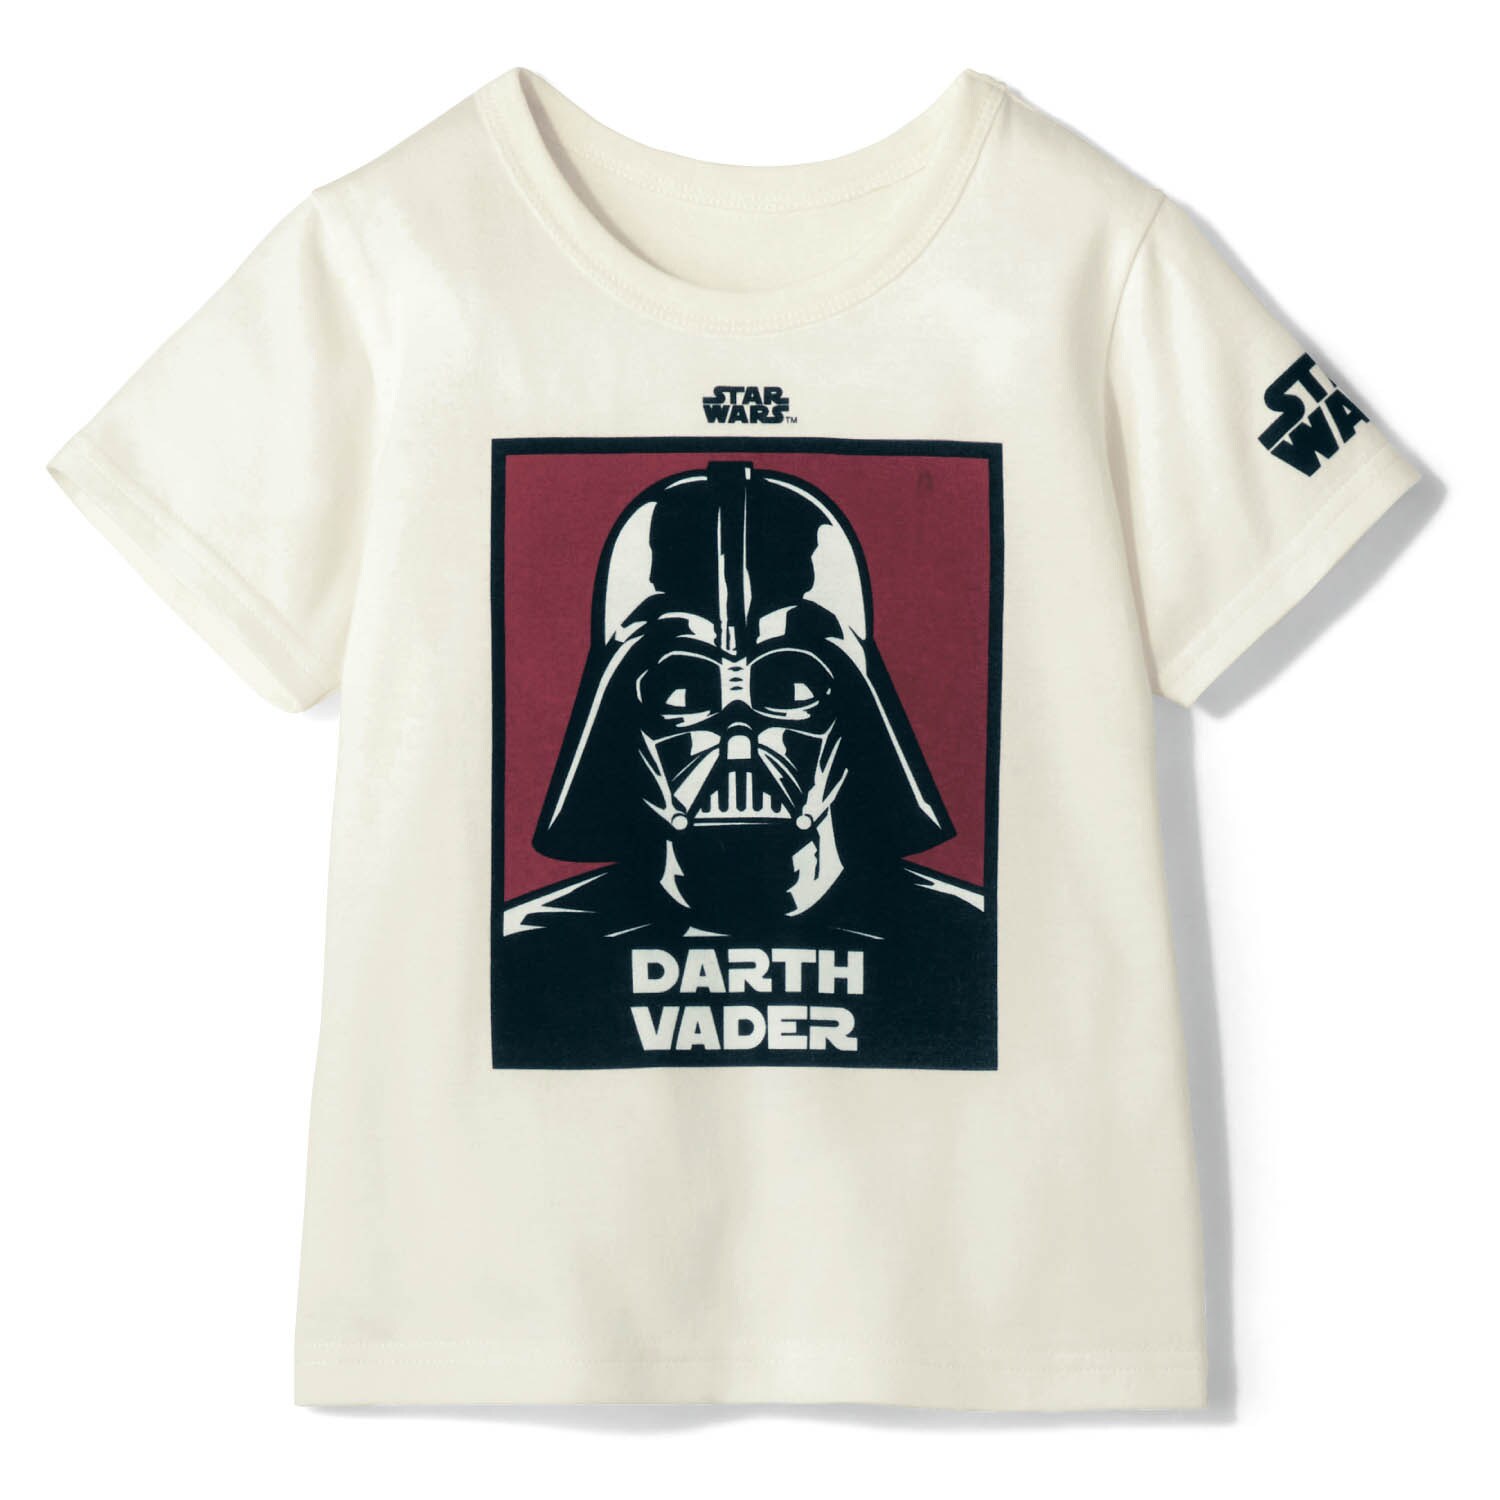 Star Wars inspired size7 kids shirt Abbey road Kleding Unisex kinderkleding Tops & T-shirts Overhemden en buttondowns 